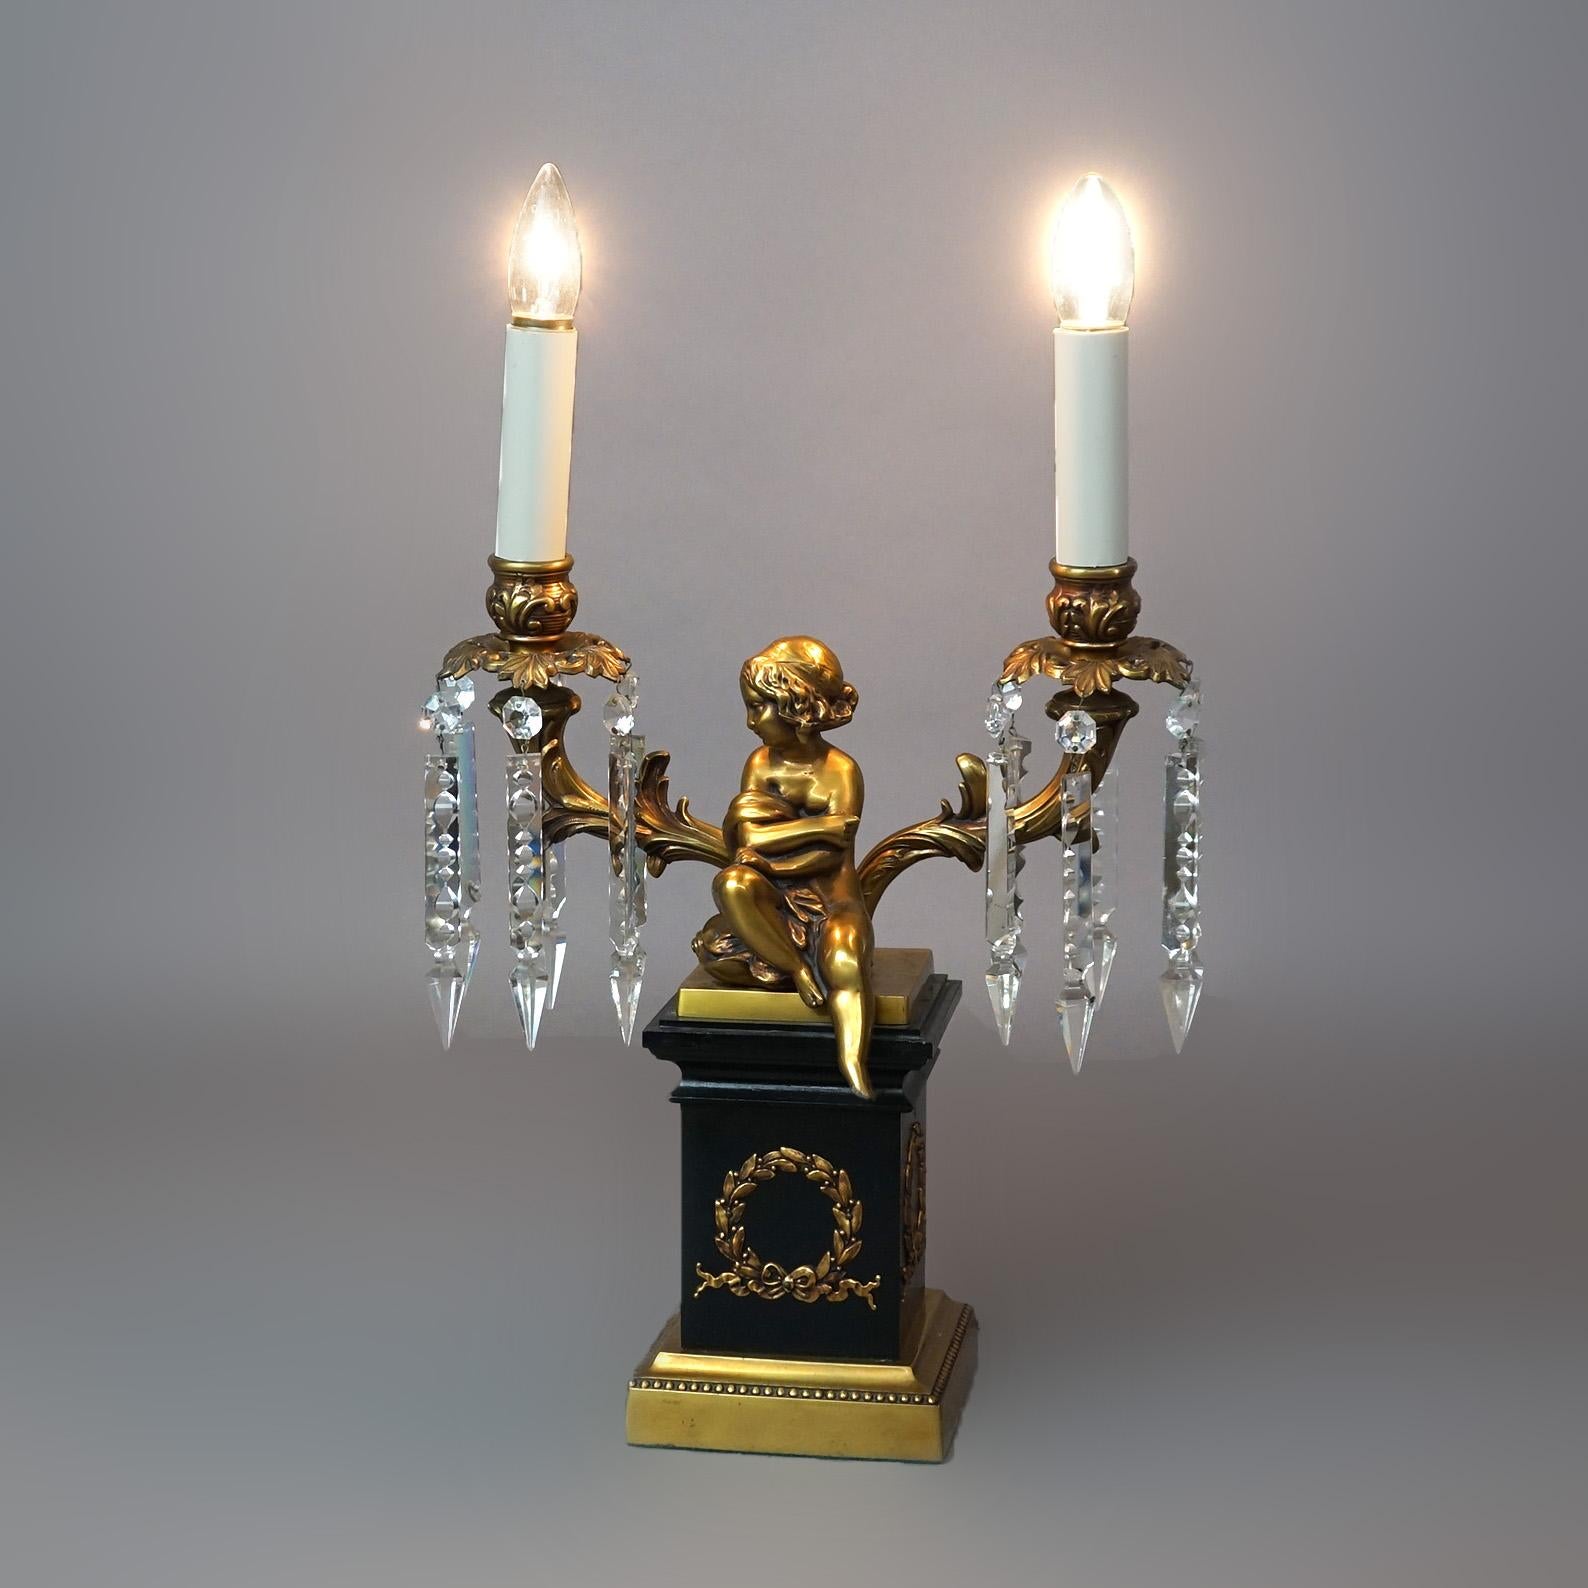 Neoklassizistische figurale Cherub-Lampe aus Messing und ebonisiertem Metall mit zwei Armen, die in Kerzenlichtern enden, 20.

Maße - 22,5 